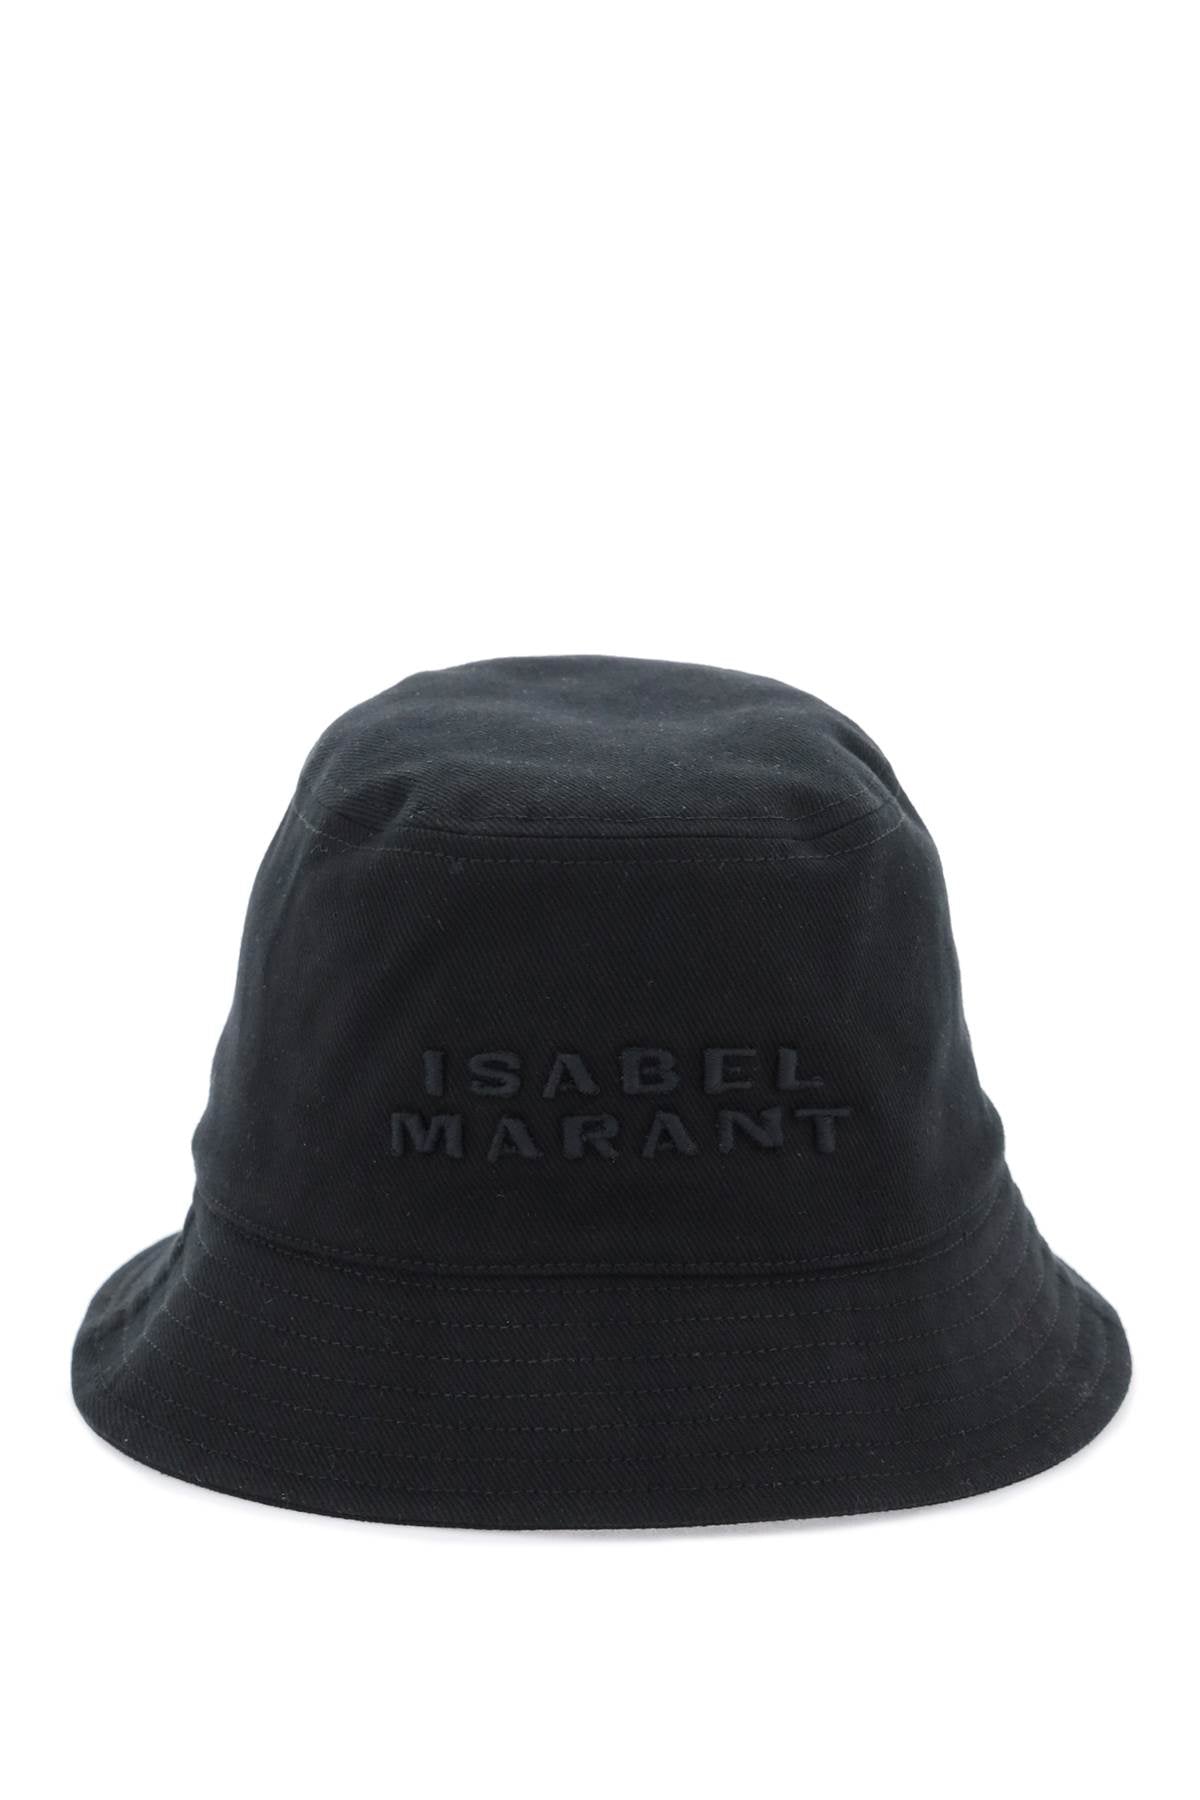 Isabel Marant Isabel marant embroidered logo bucket hat